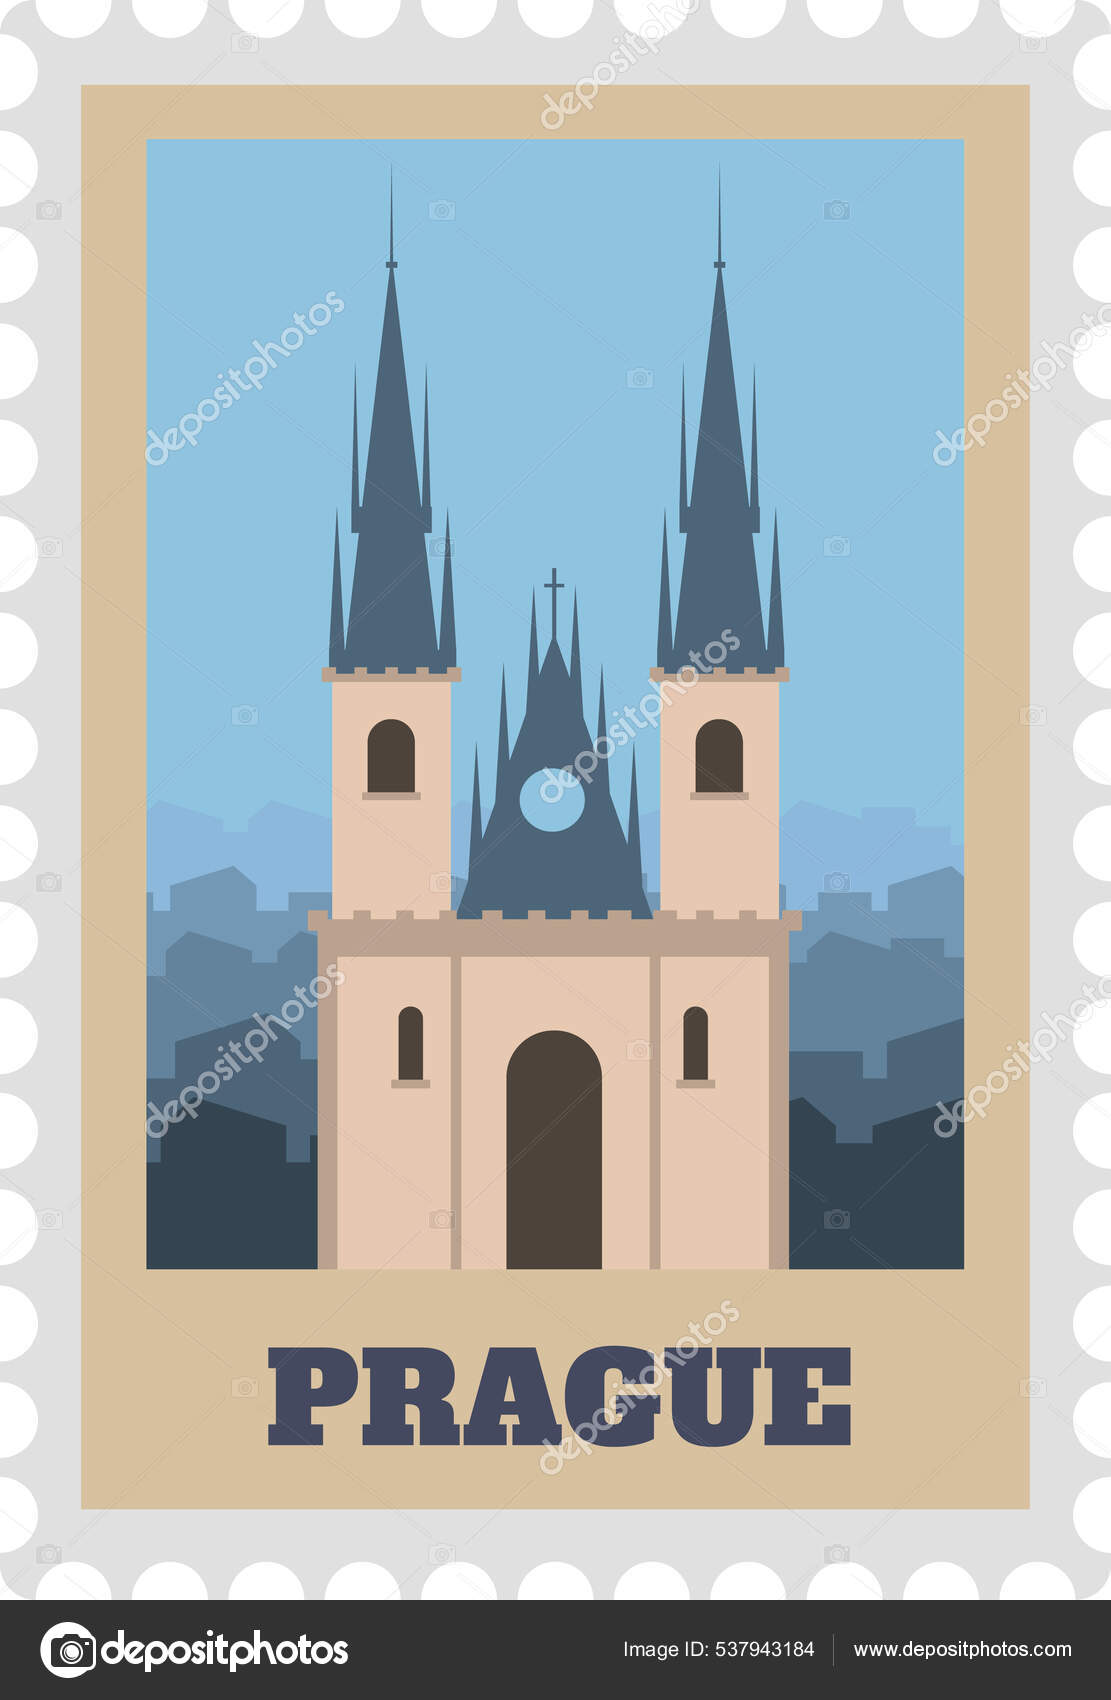 Travel postage stamps. Vintage stamp with national landmarks